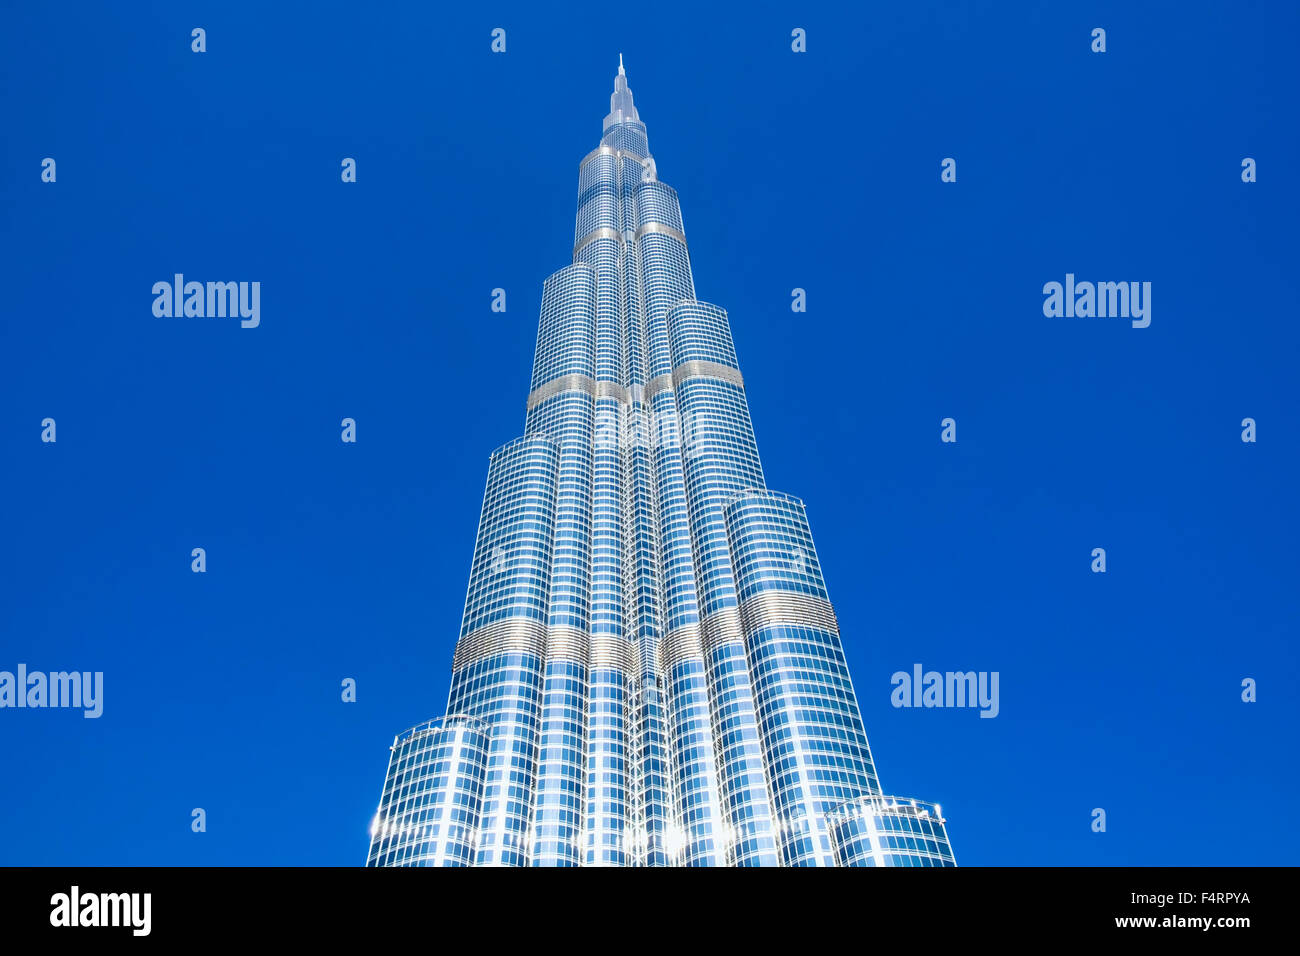 Detailansicht des Burj Khalifa Wolkenkratzer, weltweit höchsten Gebäude in Dubai Vereinigte Arabische Emirate Stockfoto